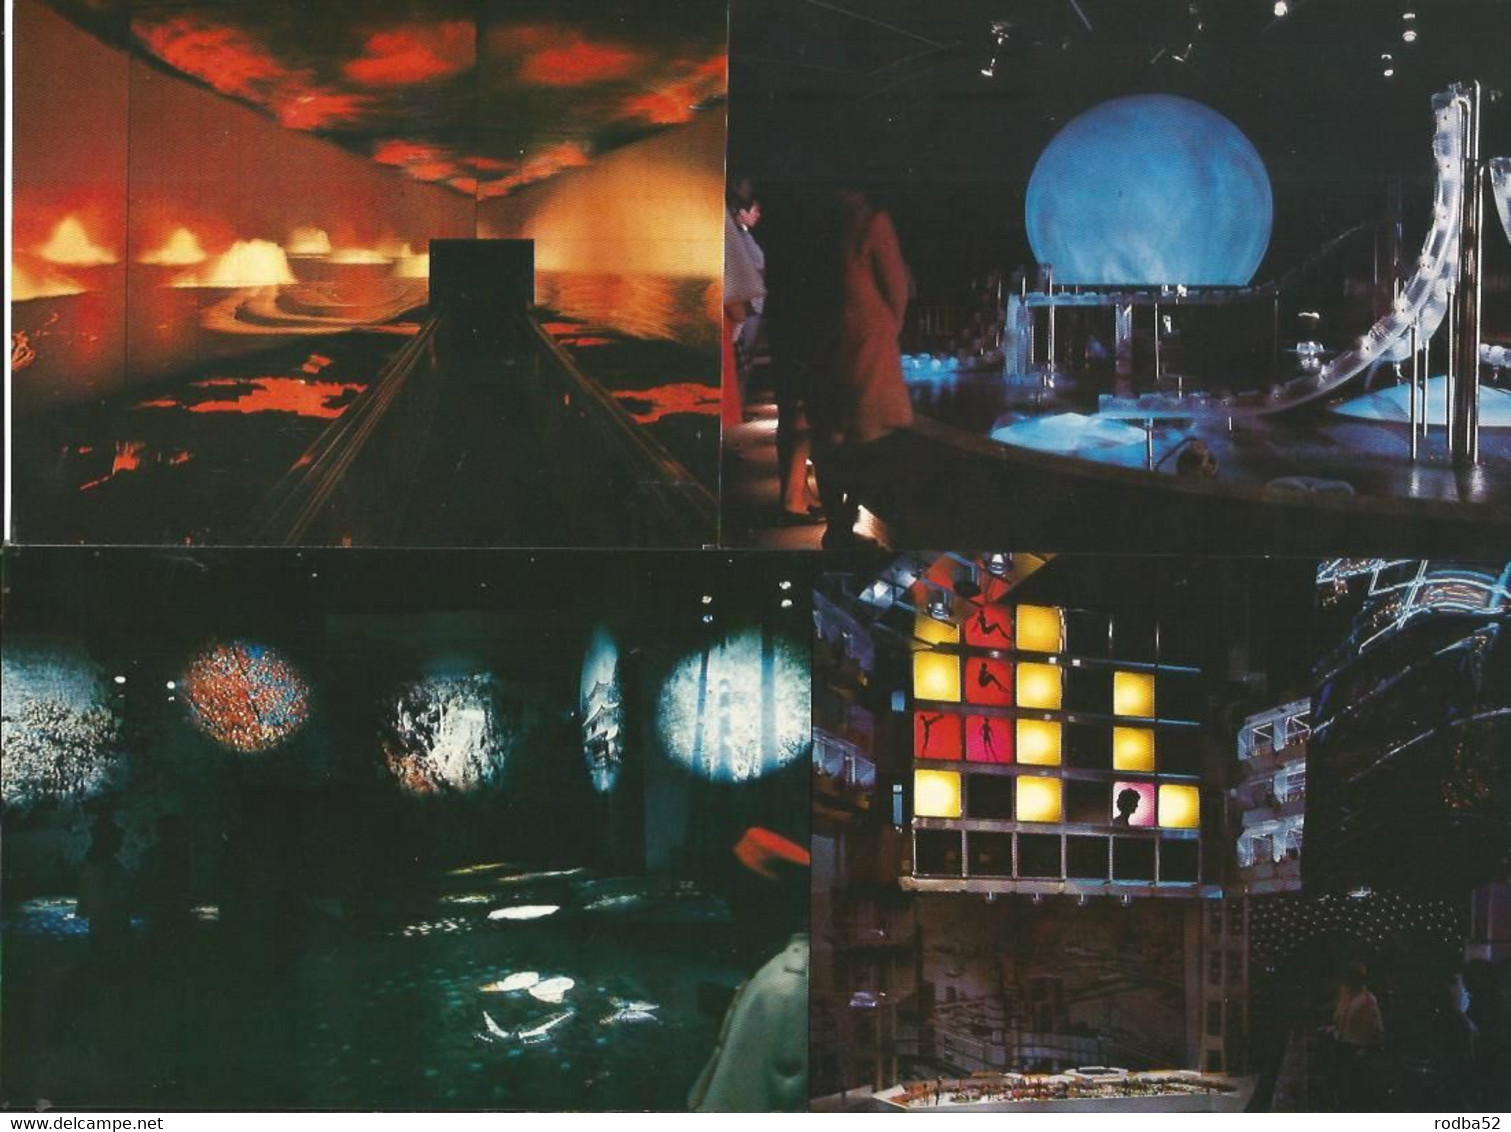 CPSM - Japan - Pochette 12 Cartes -  Expo 70 - Osaka - Mitsubishi Pavilion Science Fiction - Osaka